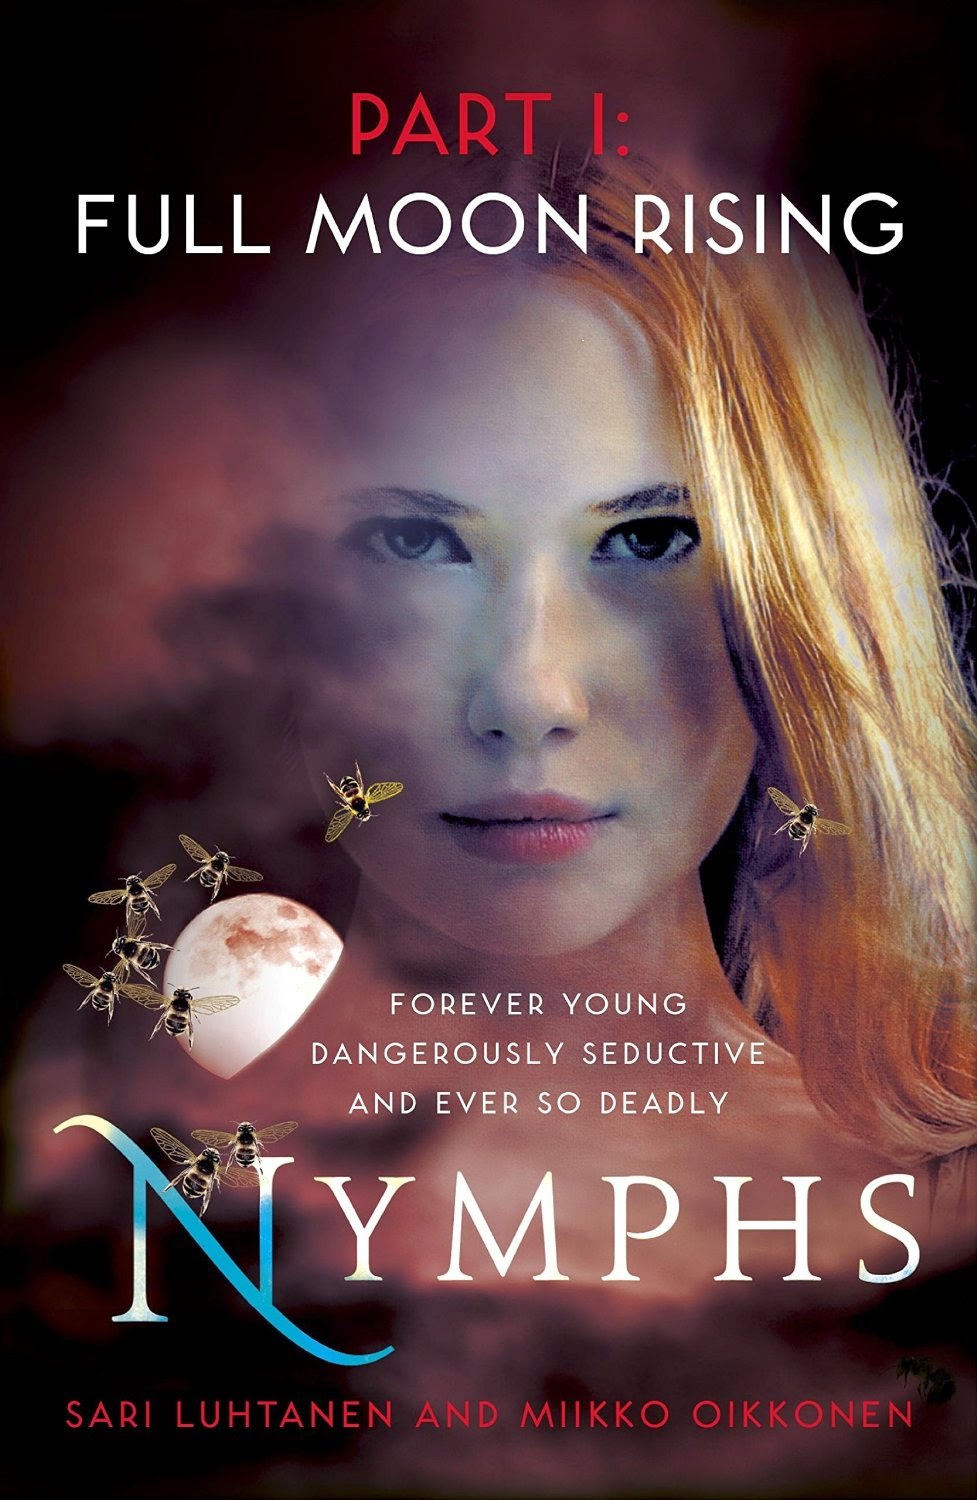 The Secret Writer: 'Nymphs' by Sari Luhtanen and Miikko Oikkonen